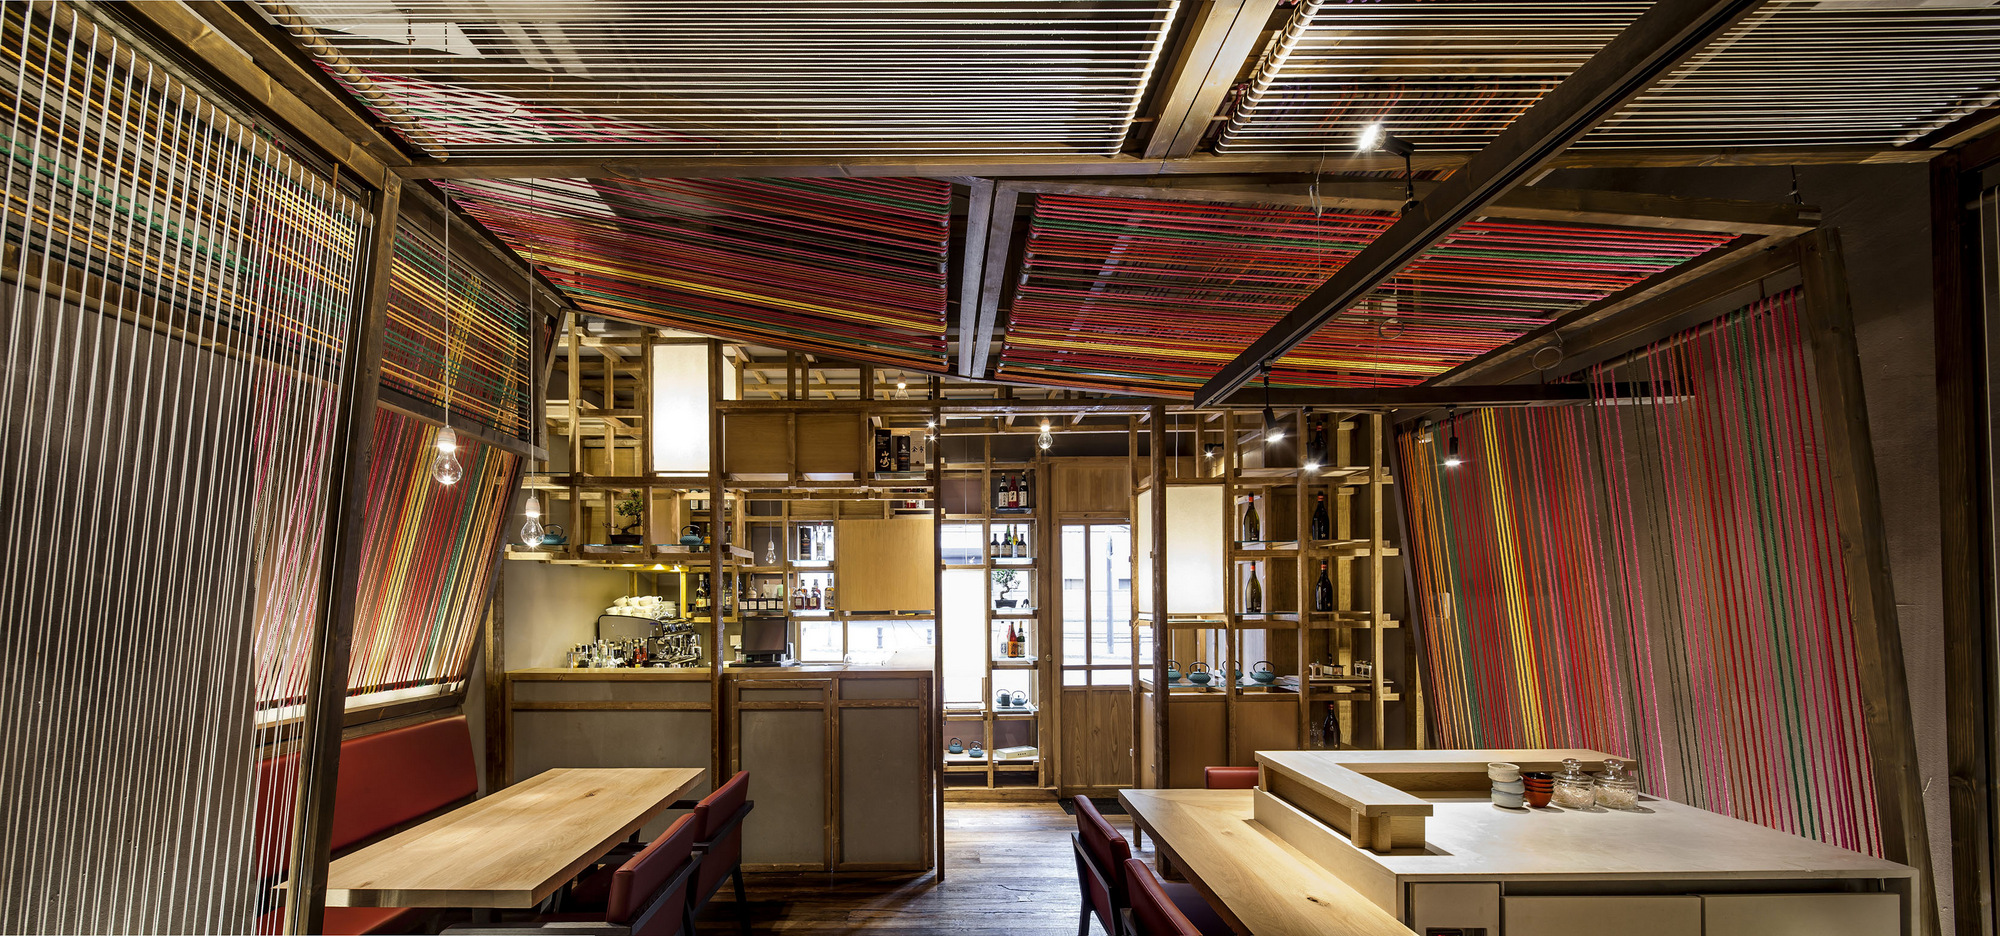 图片[8]|Pakta餐厅|ART-Arrakis | 建筑室内设计的创新与灵感